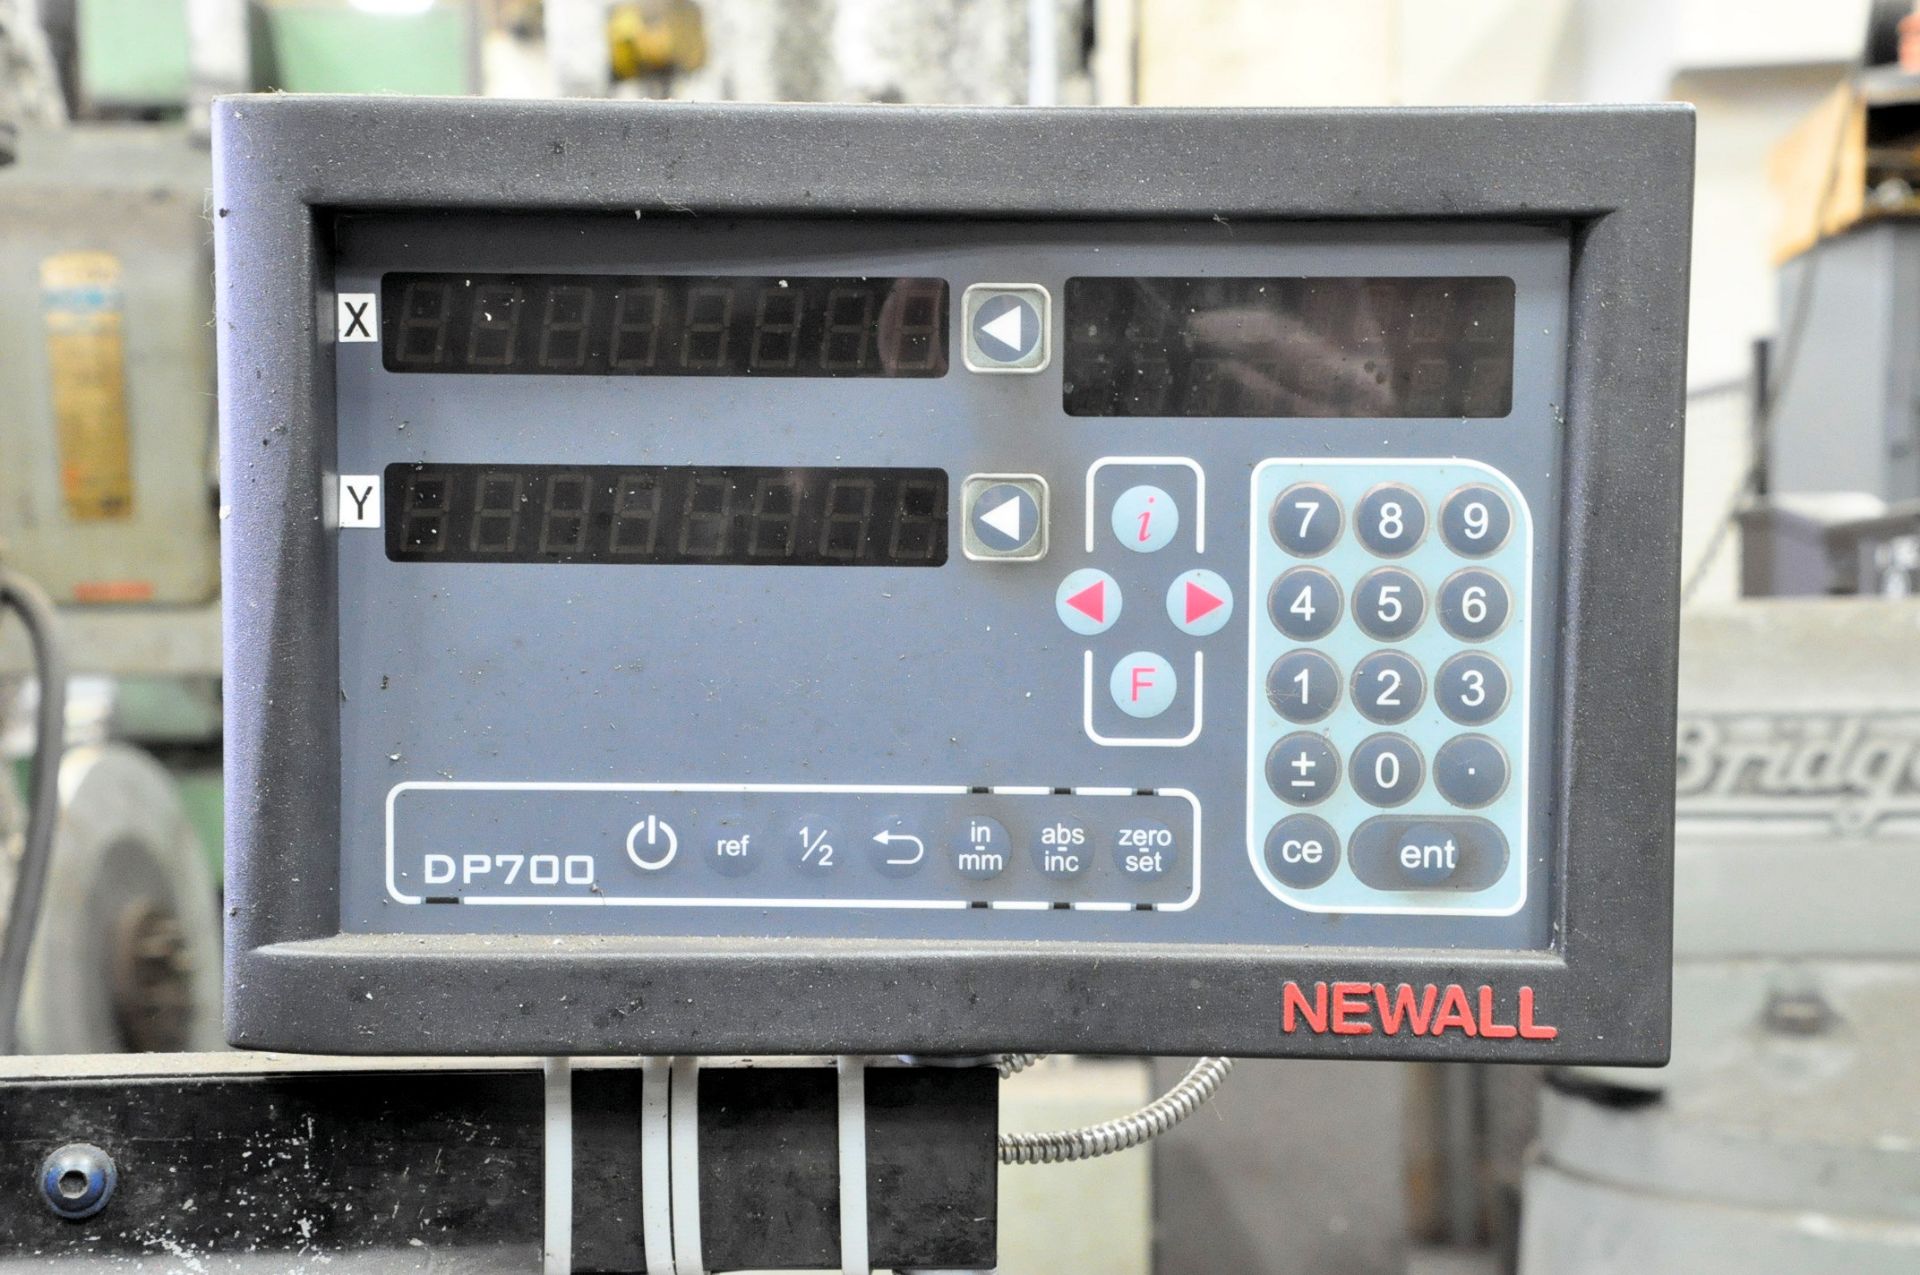 Bridgeport Series II, 2-HP Variable Speed Vertical Milling Machine, S/n 234368, with Newall DP700 - Bild 2 aus 5